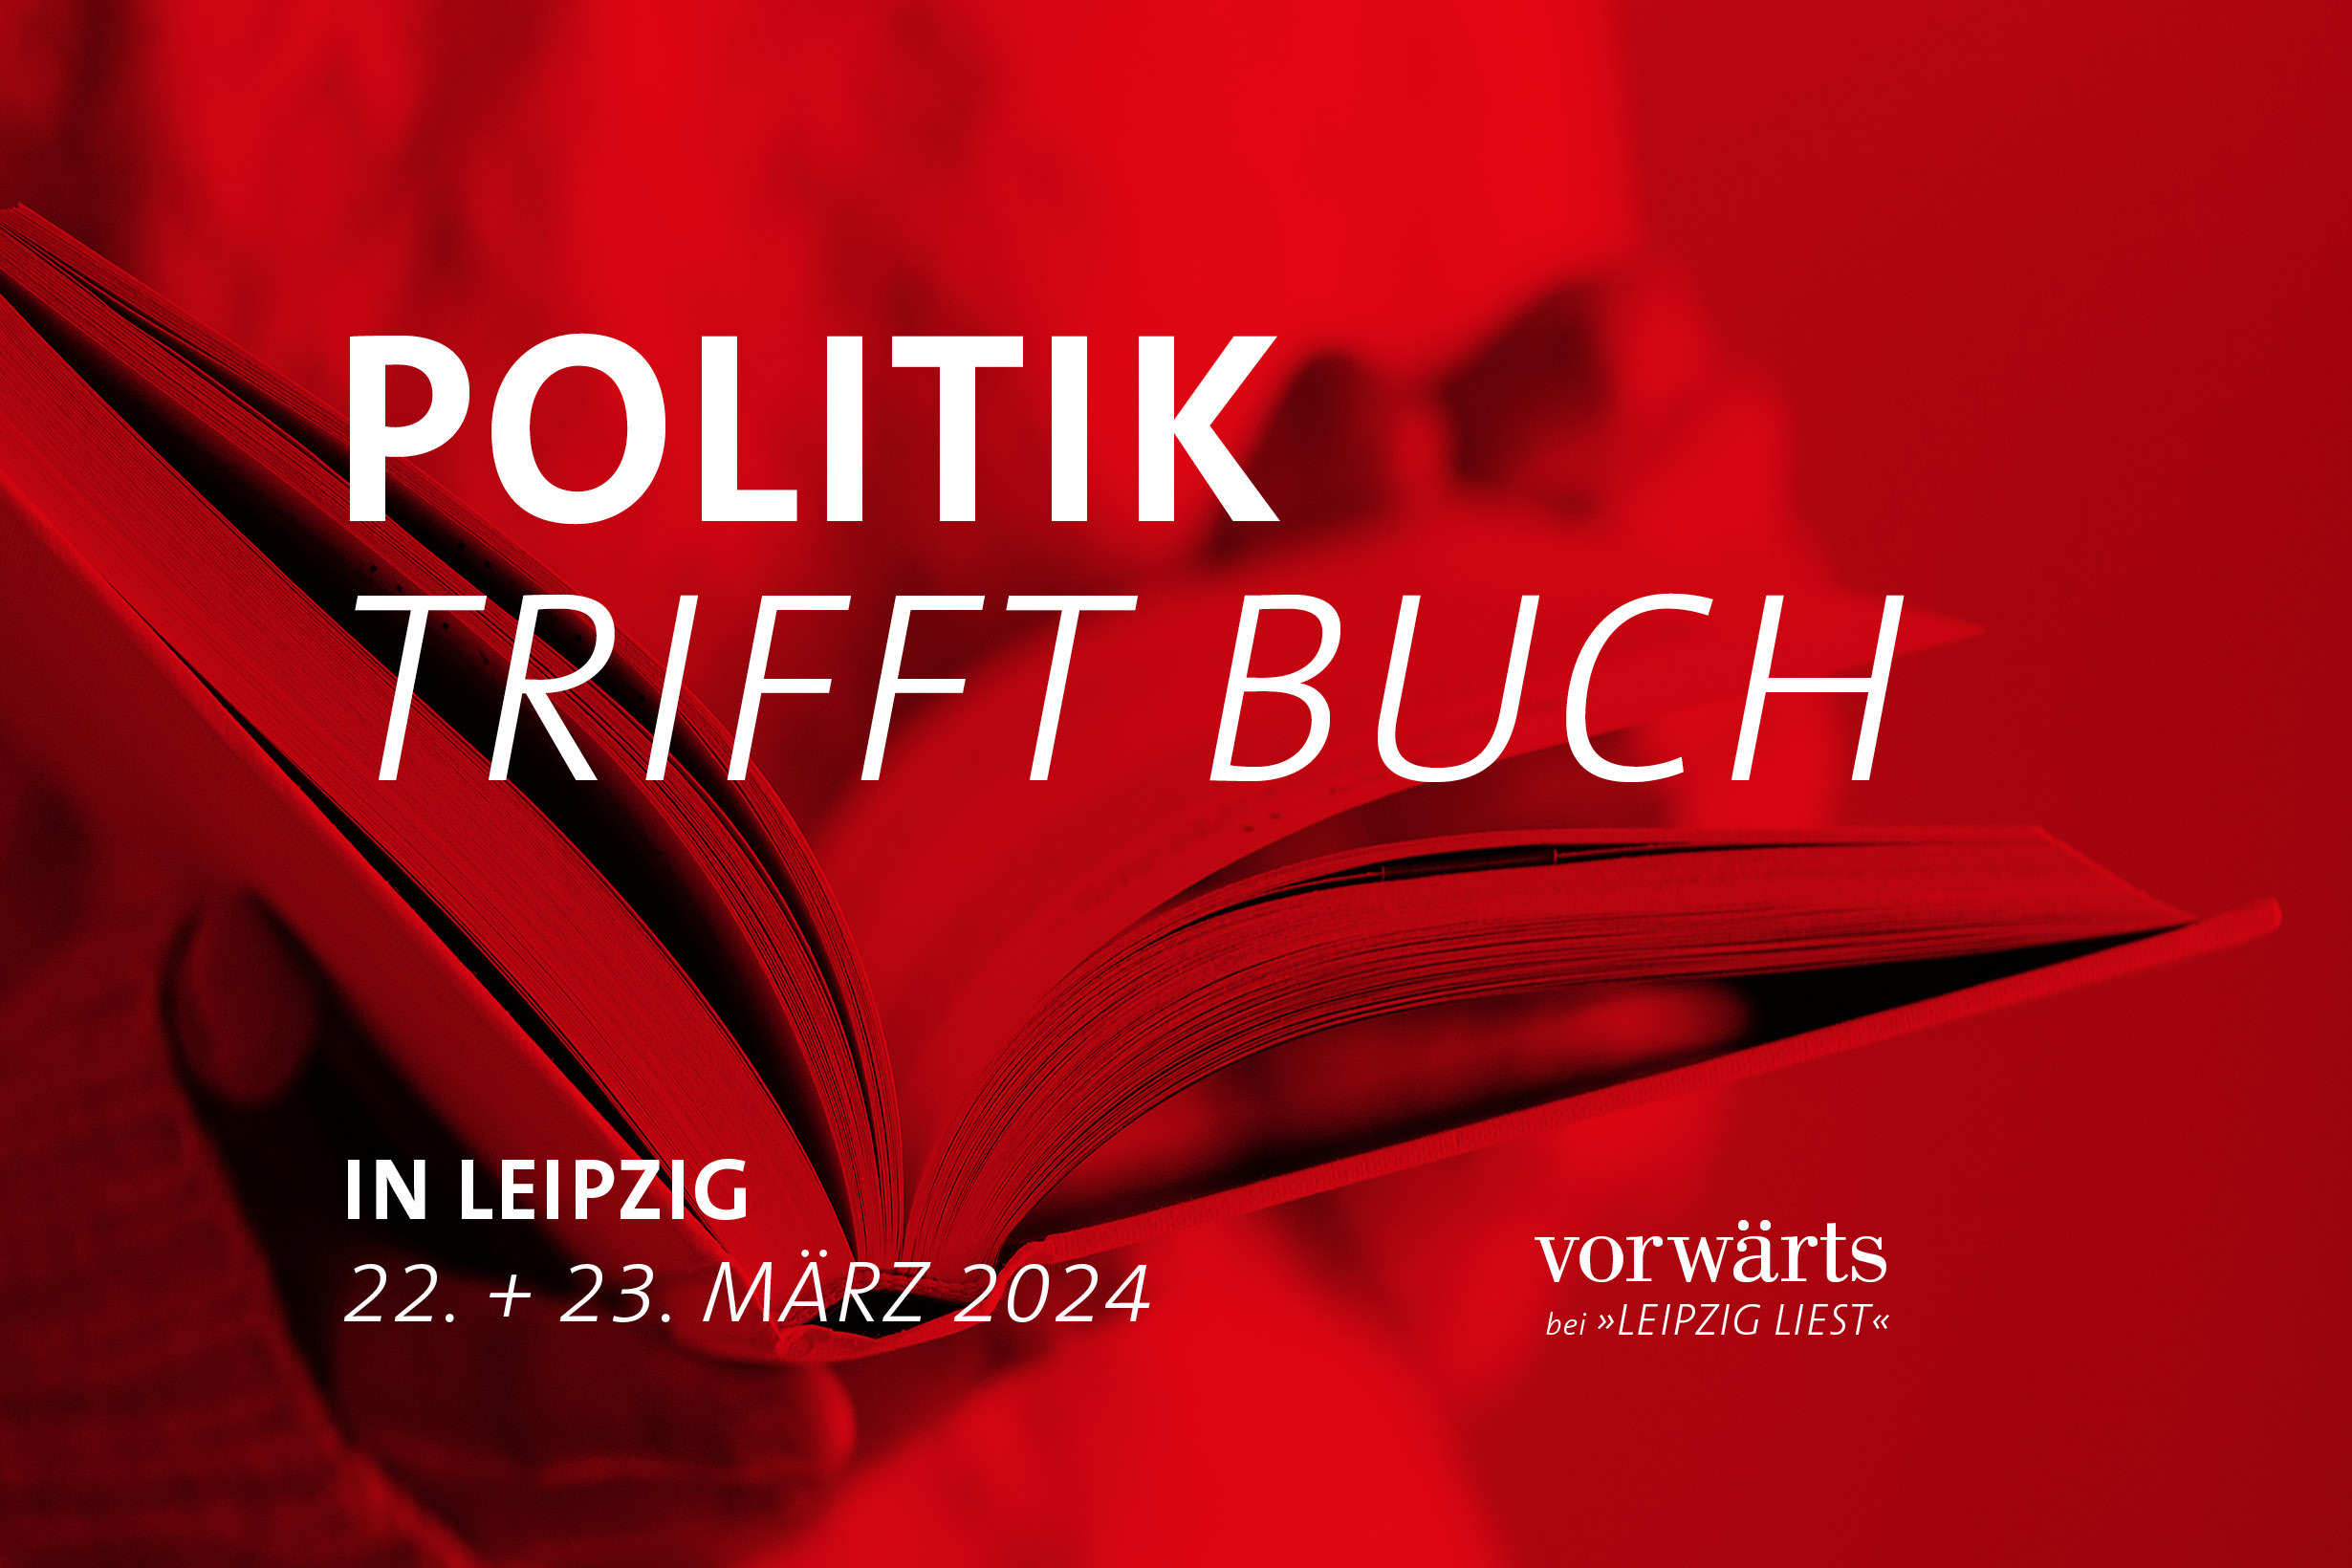 Politik trifft Buch: Zur Leipziger Buchmesse bietet der vorwärts wieder ein vielfältiges Programm an.